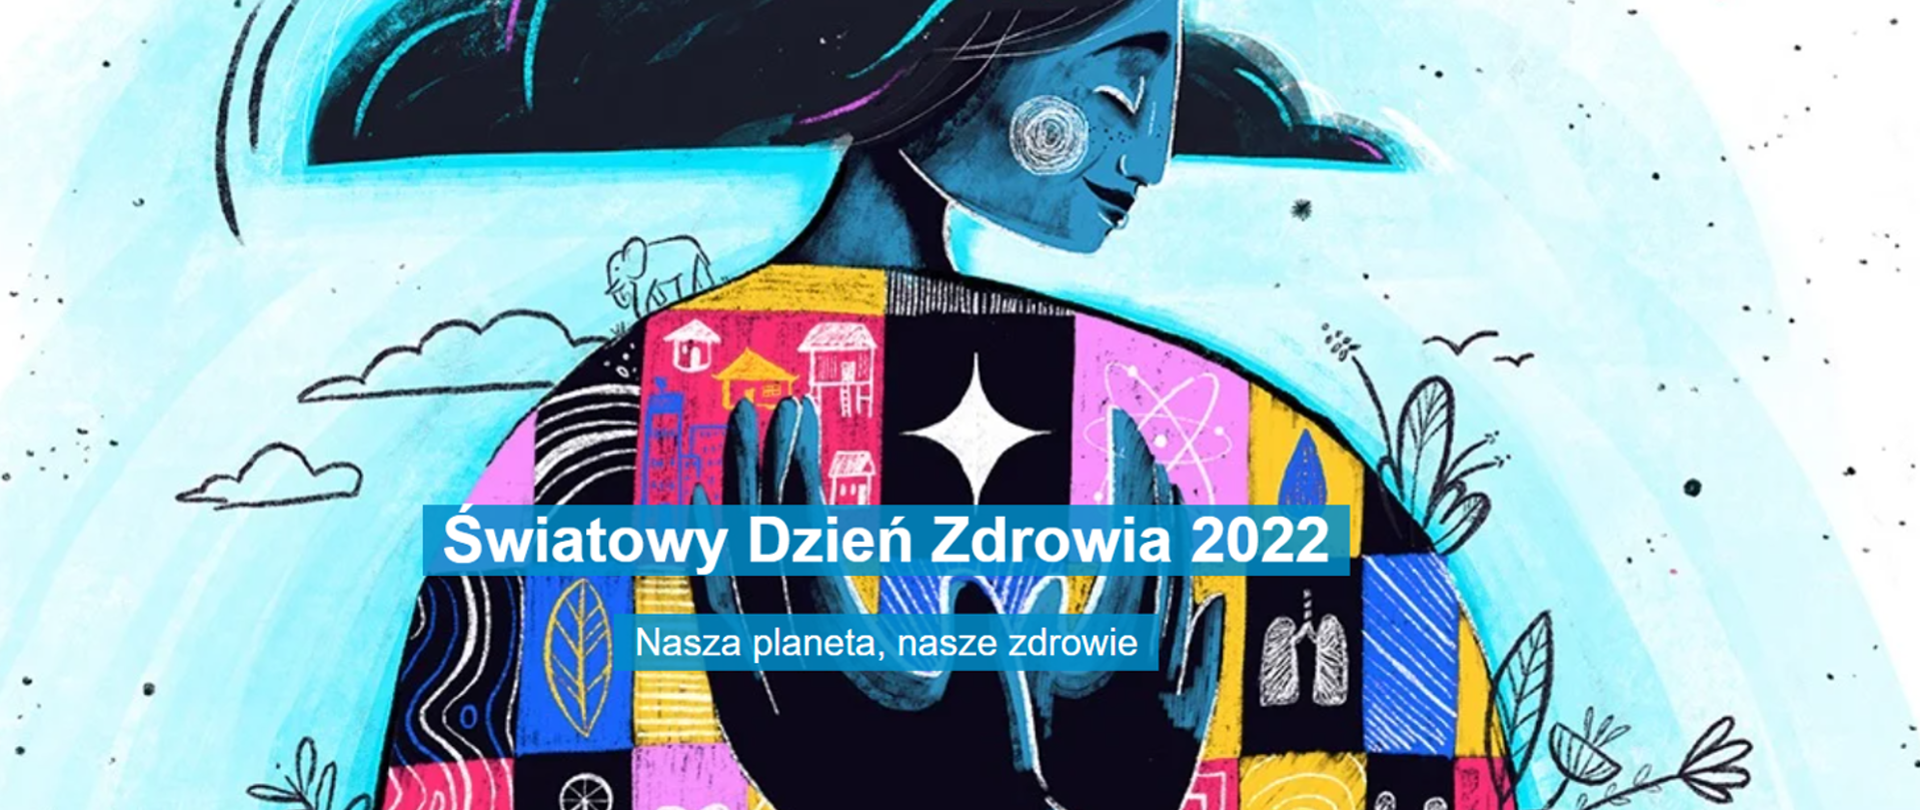 Plakat informacyjny - Światowy Dzień Zdrowia 2022